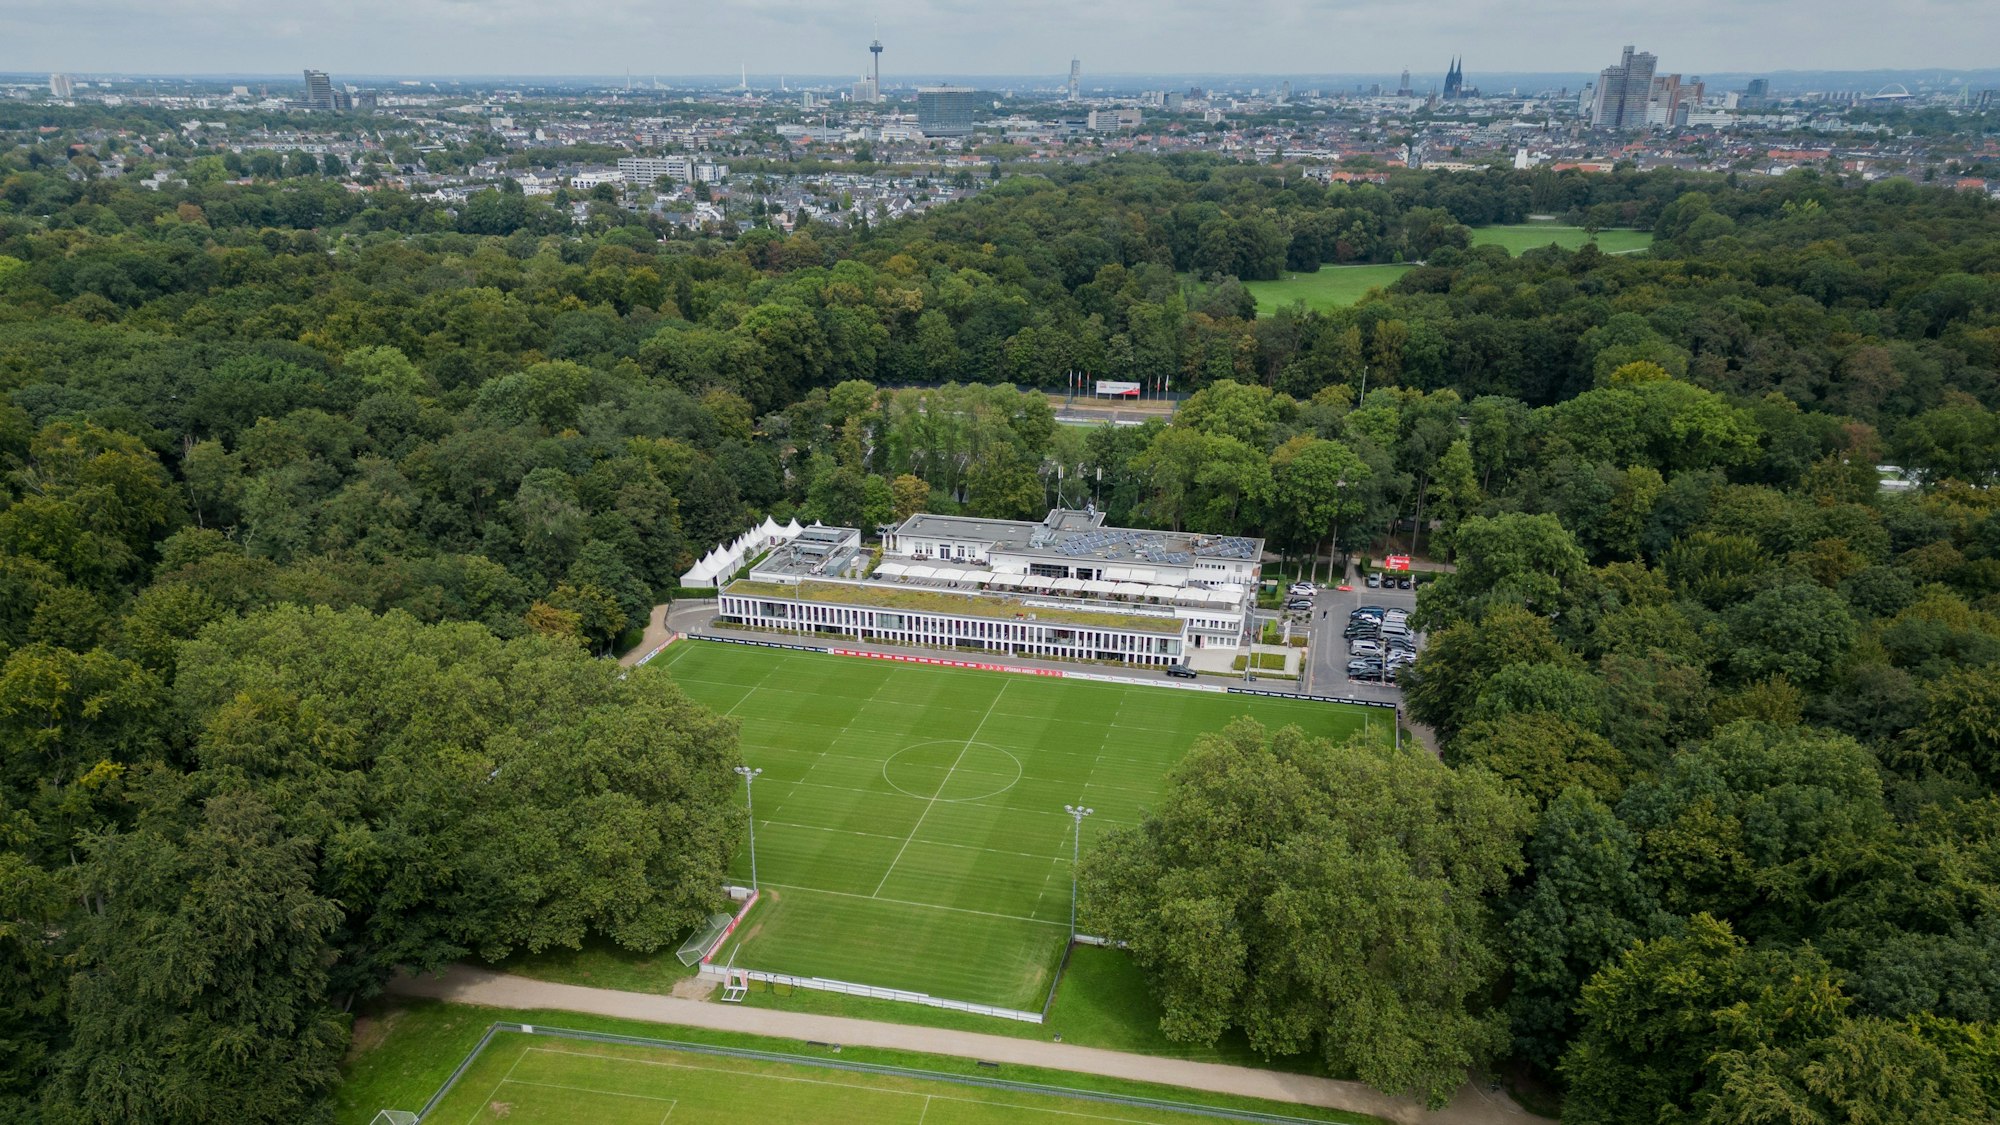 Blick auf das Geißbockheim -Trainingsgelände des 1. FC Köln